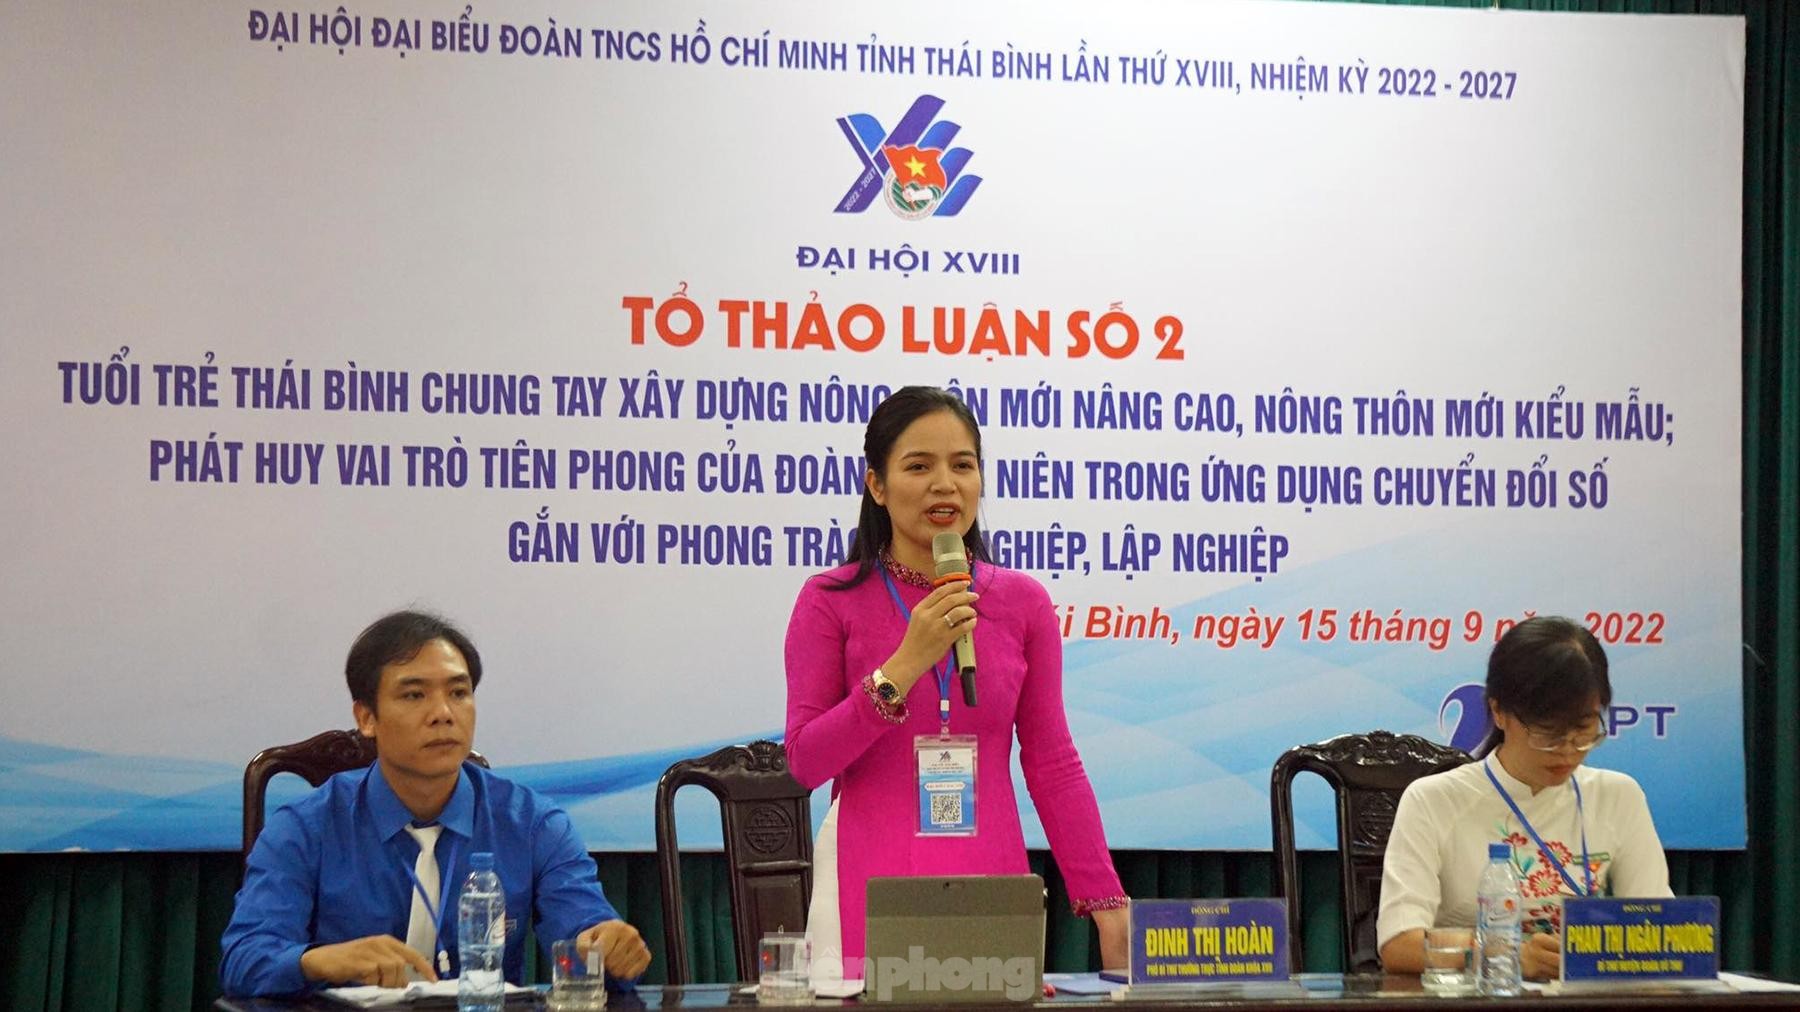 Toàn cảnh phiên khai mạc Đại hội Đoàn TNCS Hồ Chí Minh tỉnh Thái Bình ảnh 4